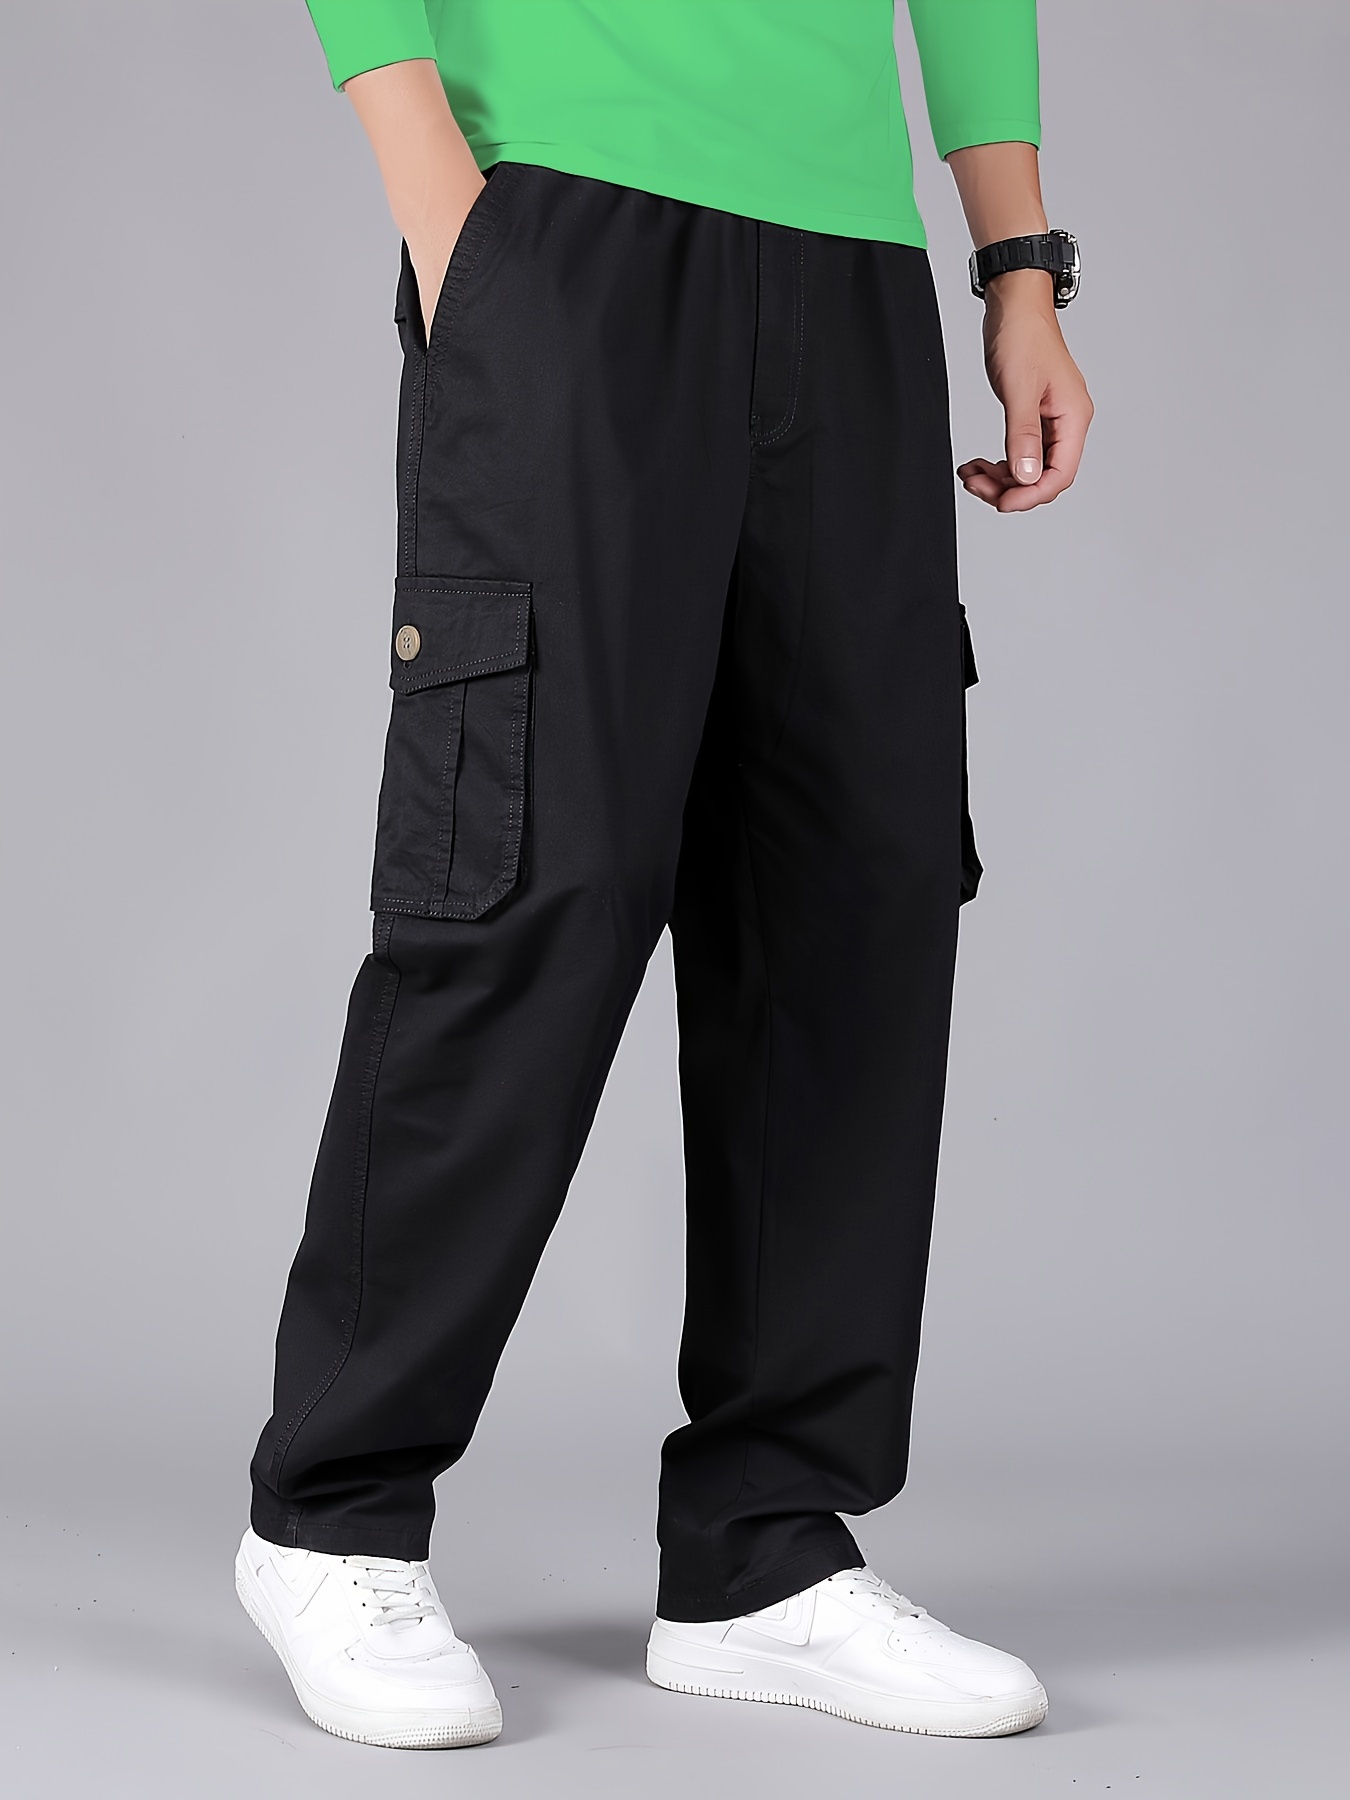 Pantalones cargo para hombre con seis bolsillos, pantalones de trabajo de  algodón elástico para hombre